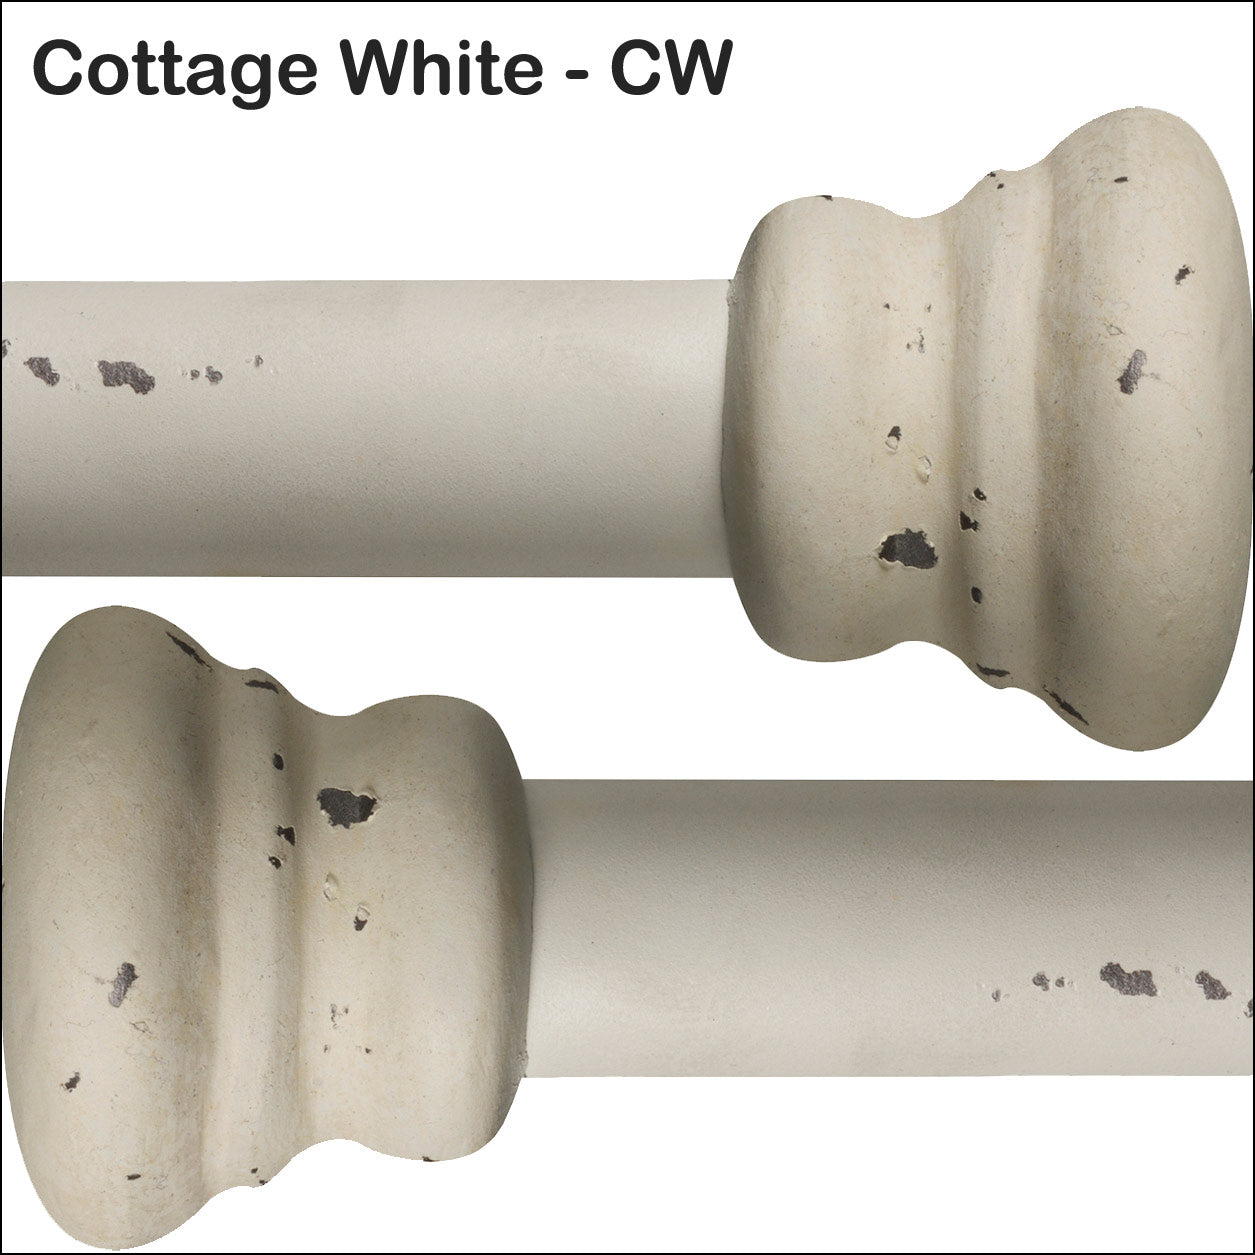 Cottage White CW Powder Coating Finish Wesley Allen Matriae